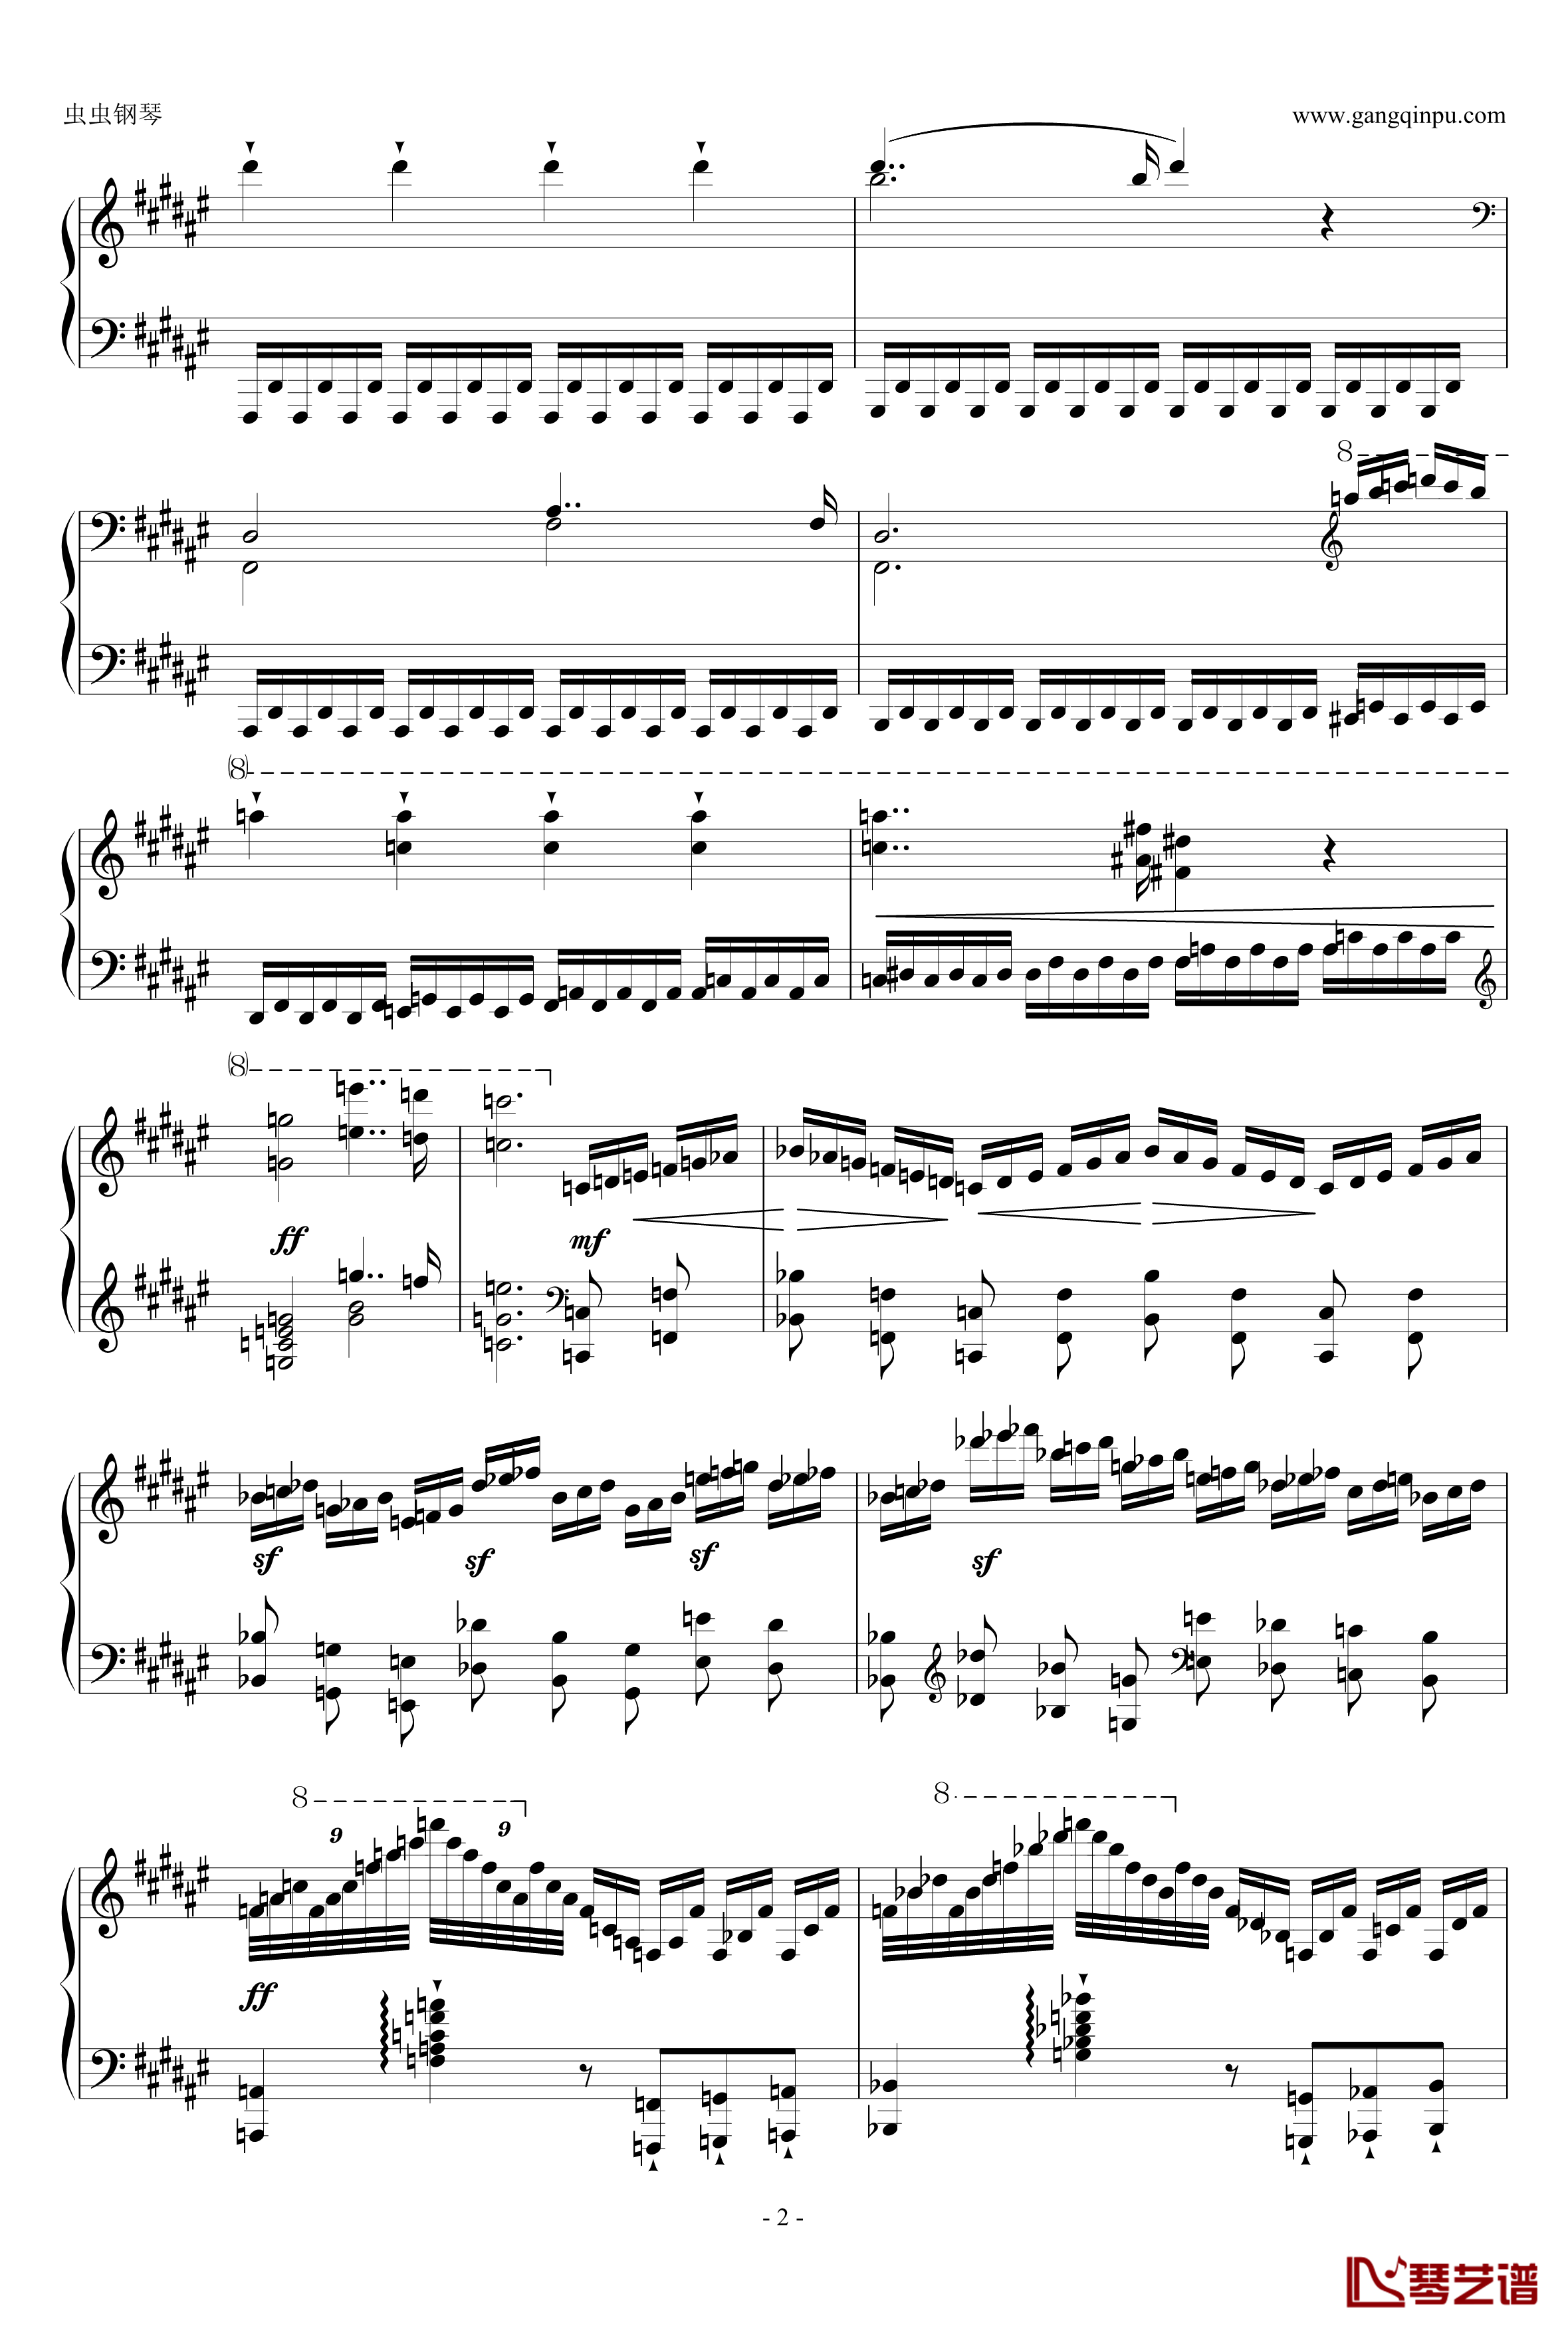 大奏鸣曲第二乐章钢琴谱-新年献礼-阿尔坎2